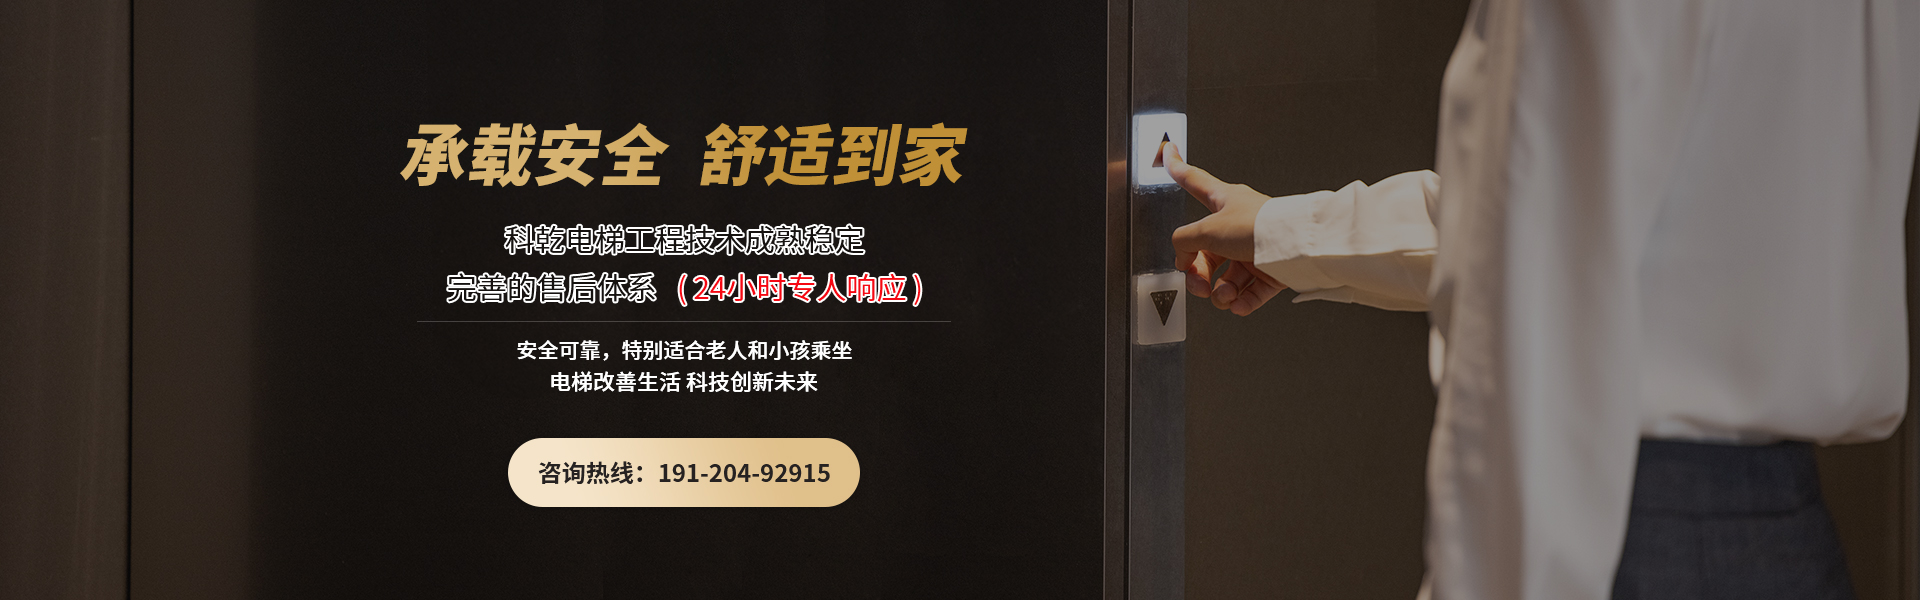 广州科乾电梯旧楼家装电梯,24小时专人响应